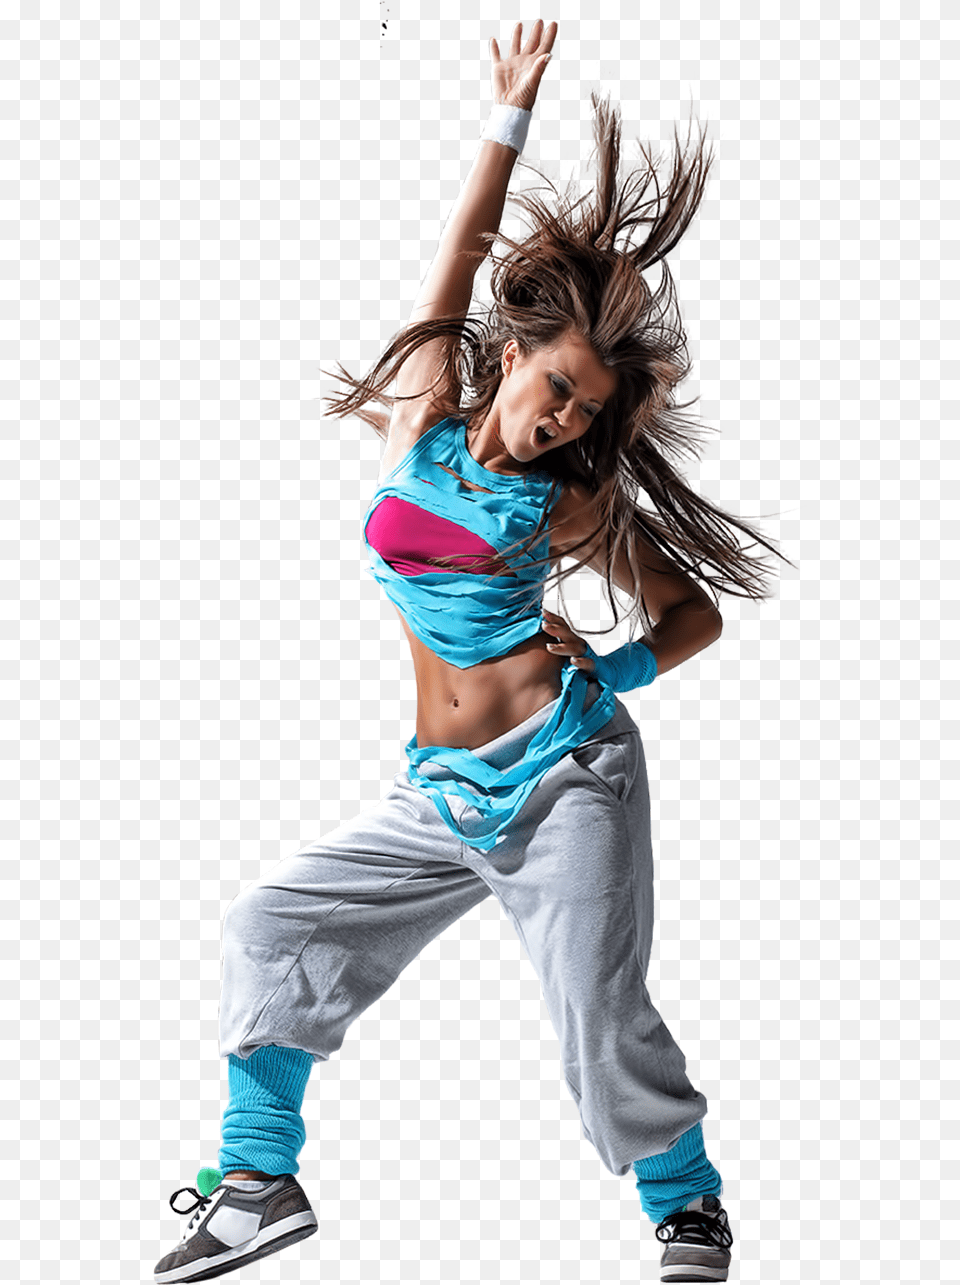 Hip Hop Dancer, Person, Dancing, Leisure Activities, Dance Pose Png